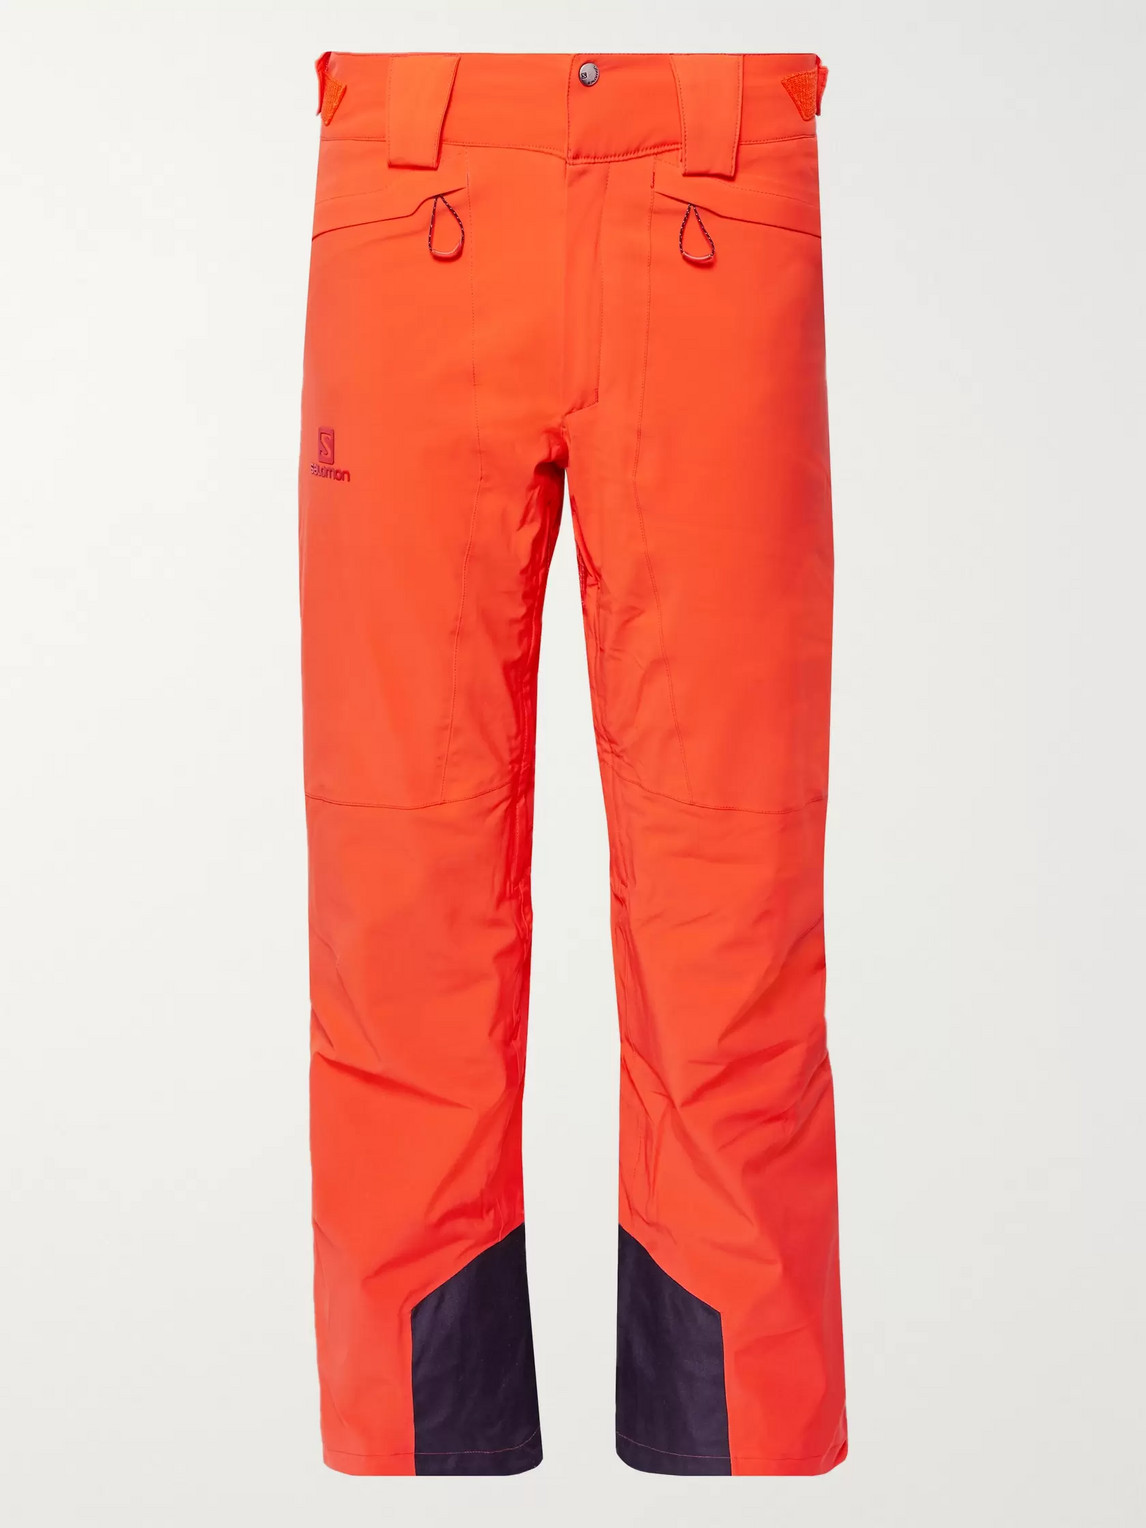 Salomon Icemania Ski Pants In Orange